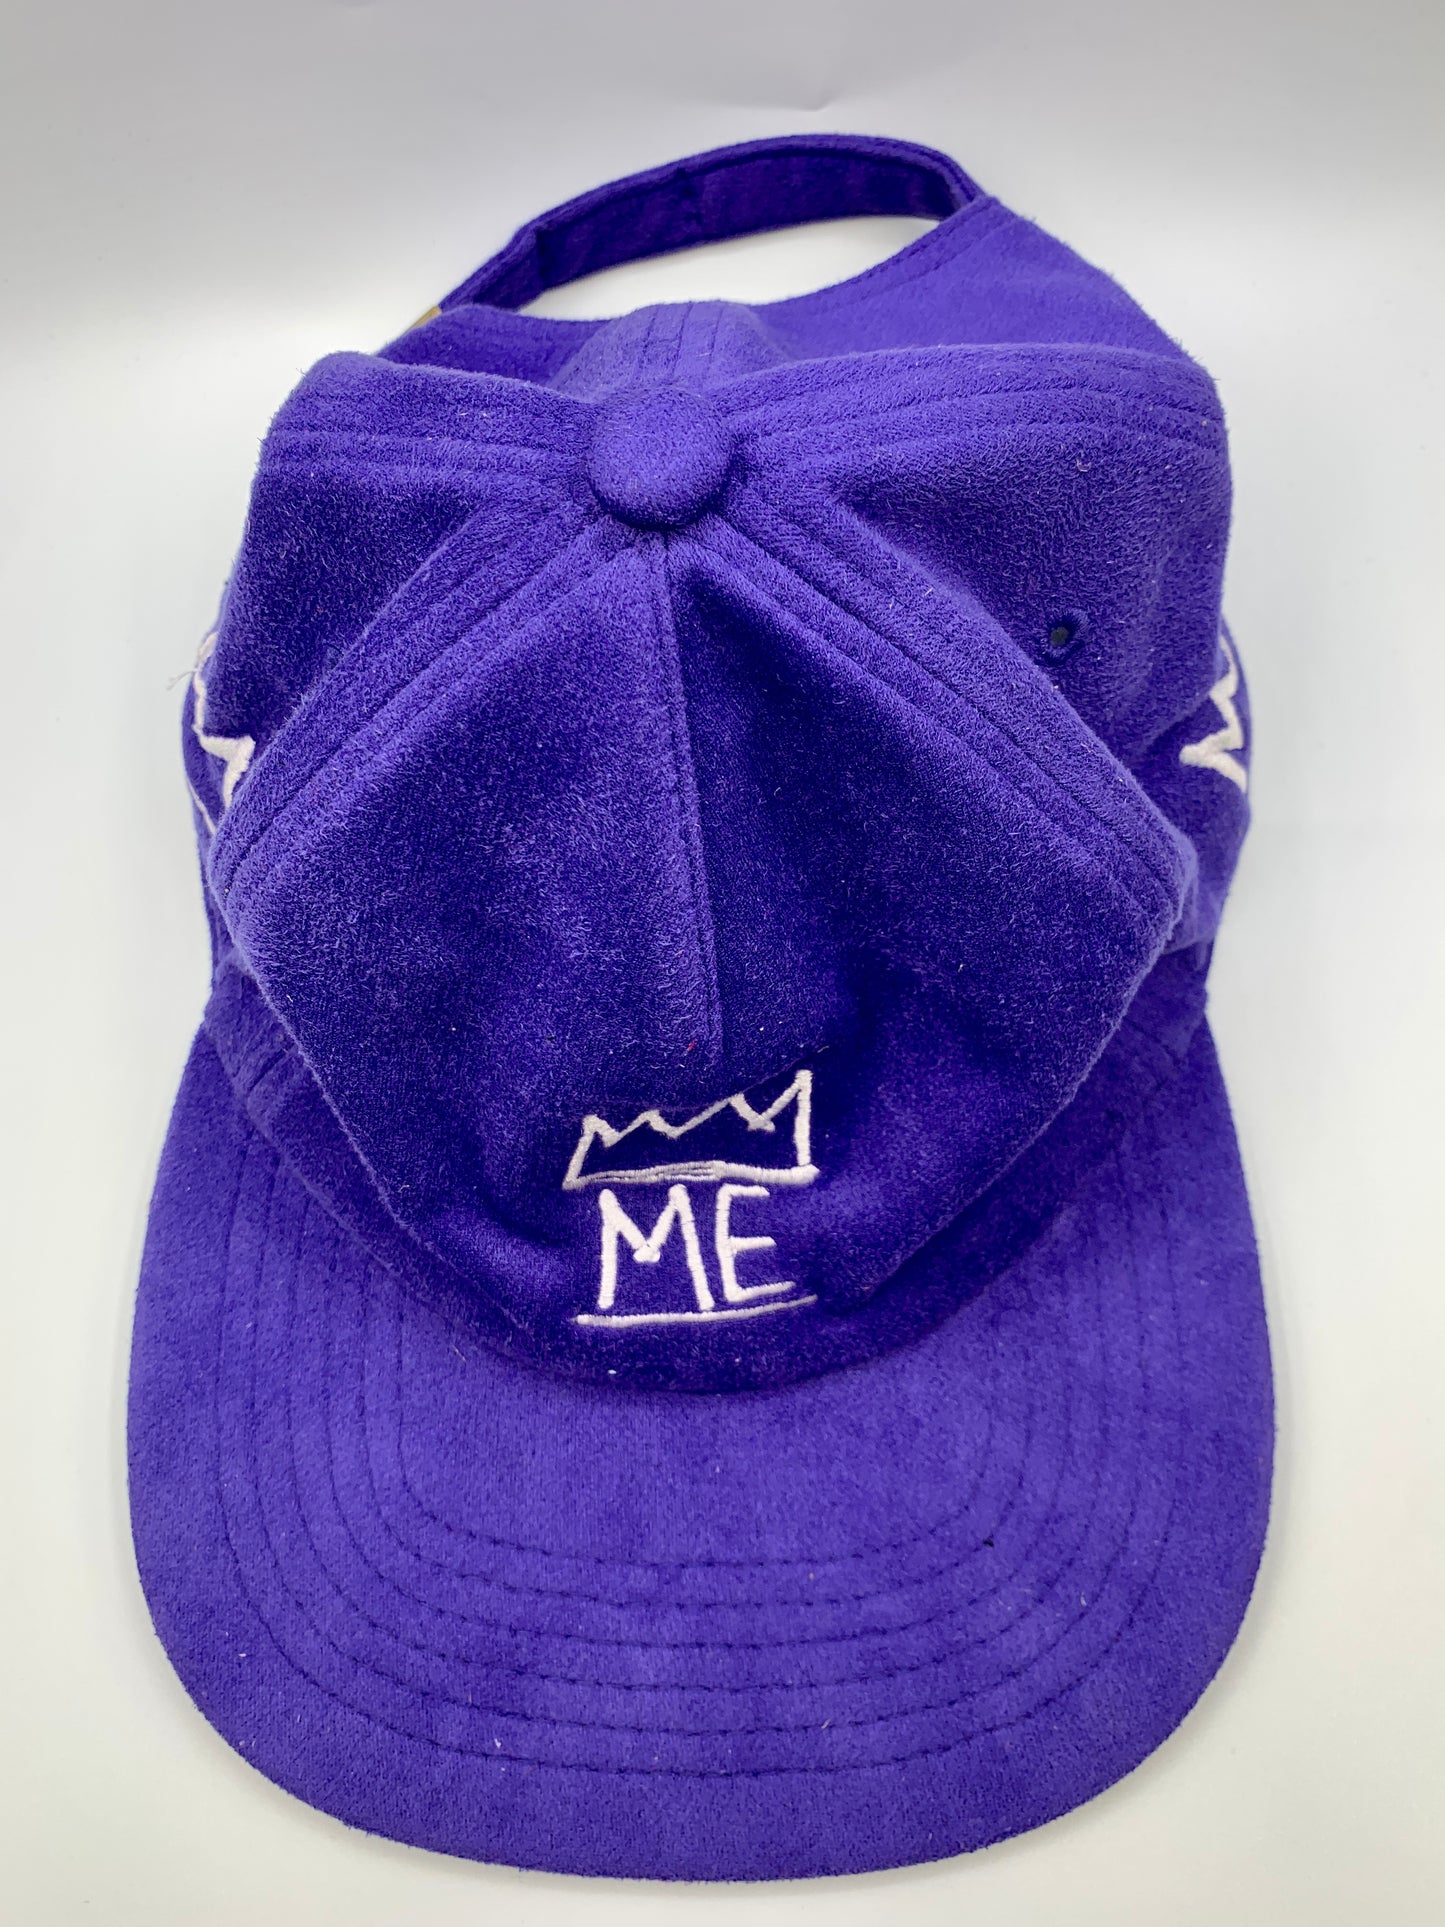 Purple Soft Suede Flat Brim Hat with White Krown